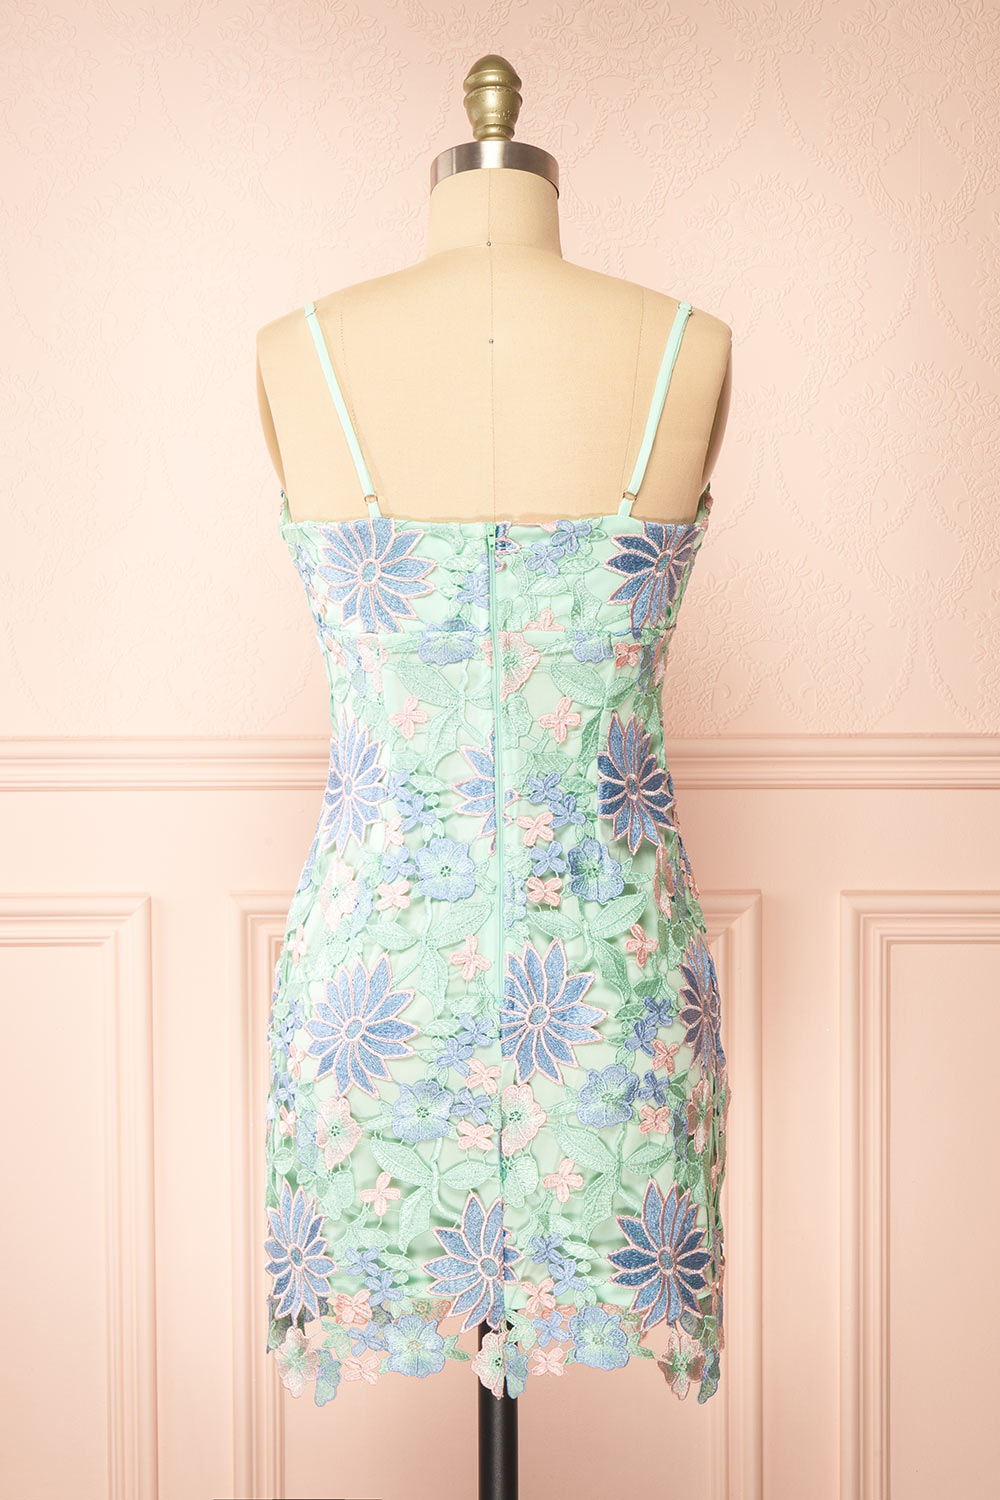 Lacrymonia Short Teal Floral Lace Dress | Boutique 1861 back view